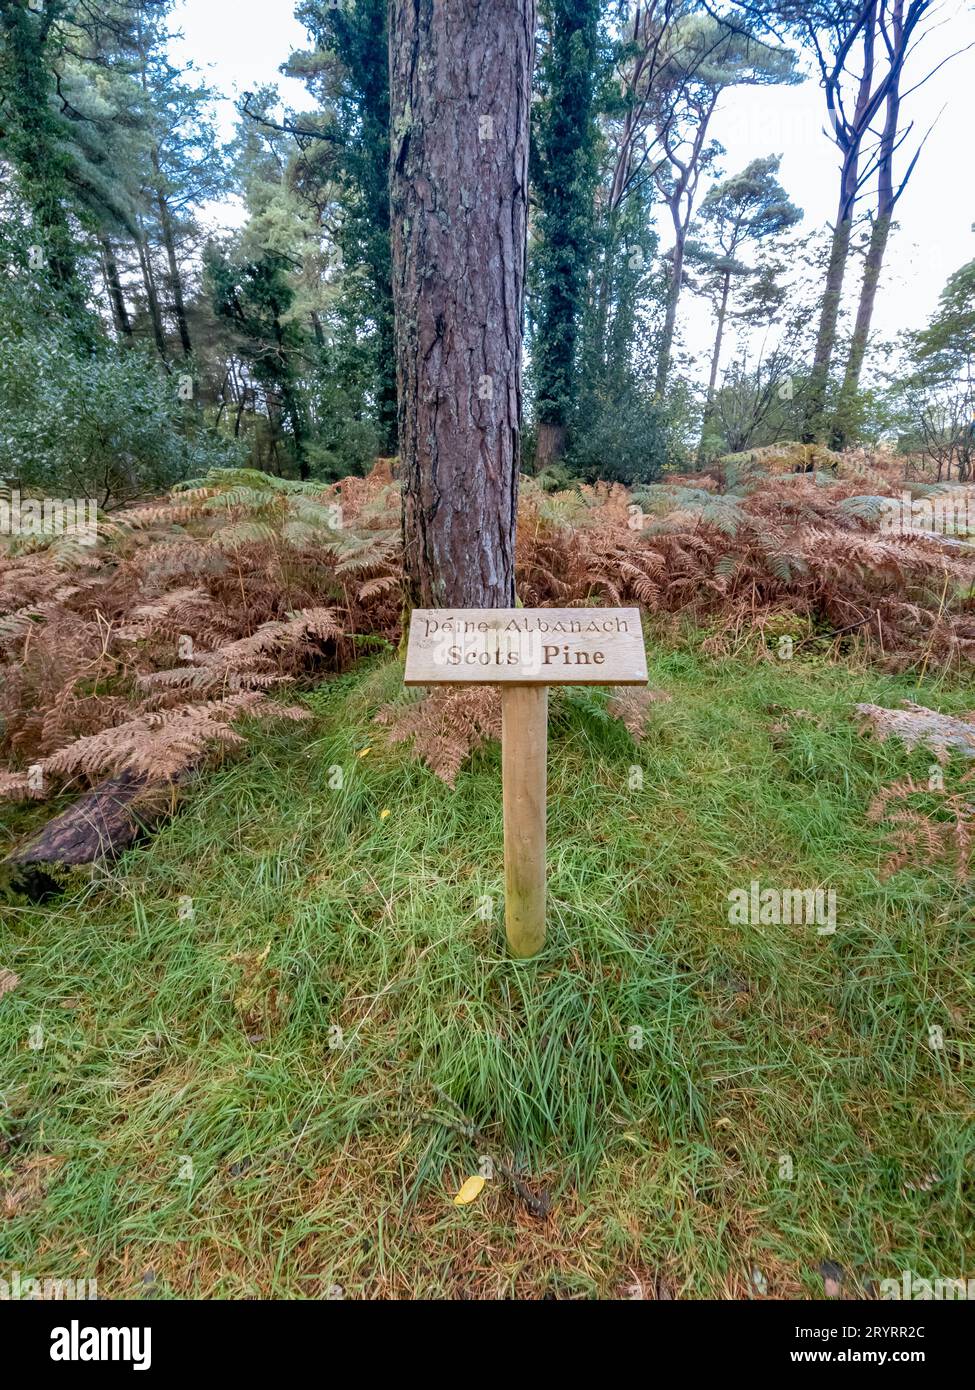 Scots pine and sign explaining it irish and english including translation. Stock Photo